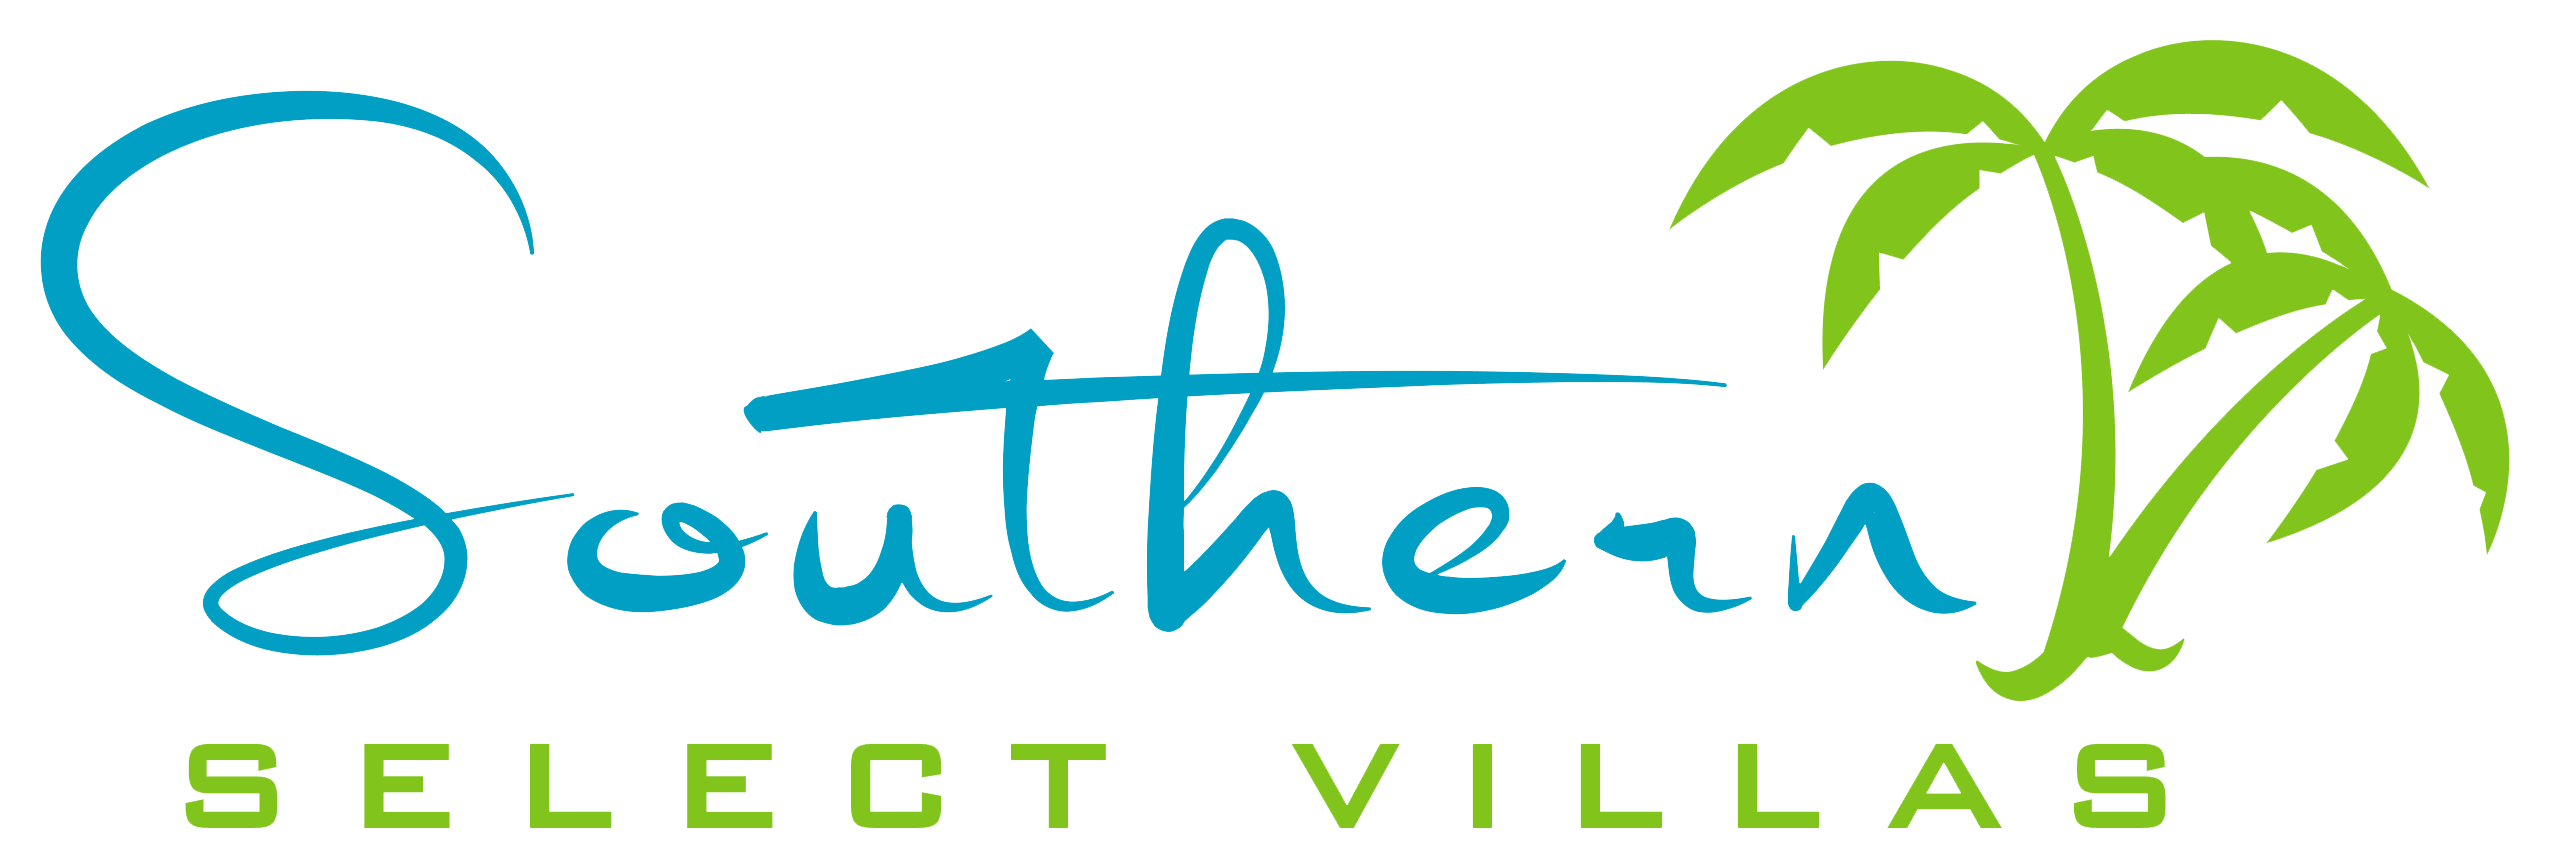 Southern Select Villas brand logo